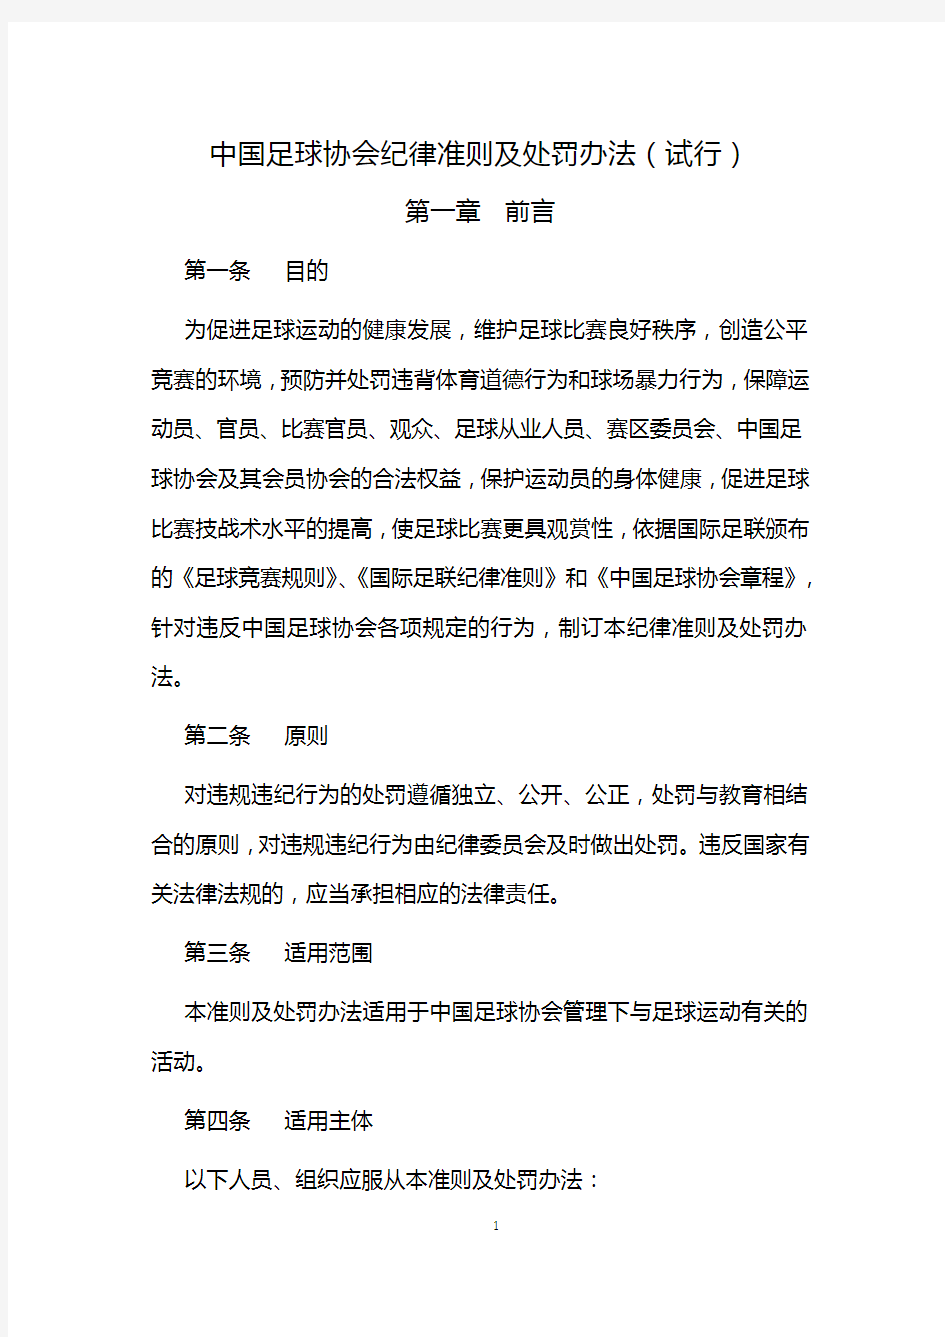 中国足球协会纪律准则及处罚办法(试行)